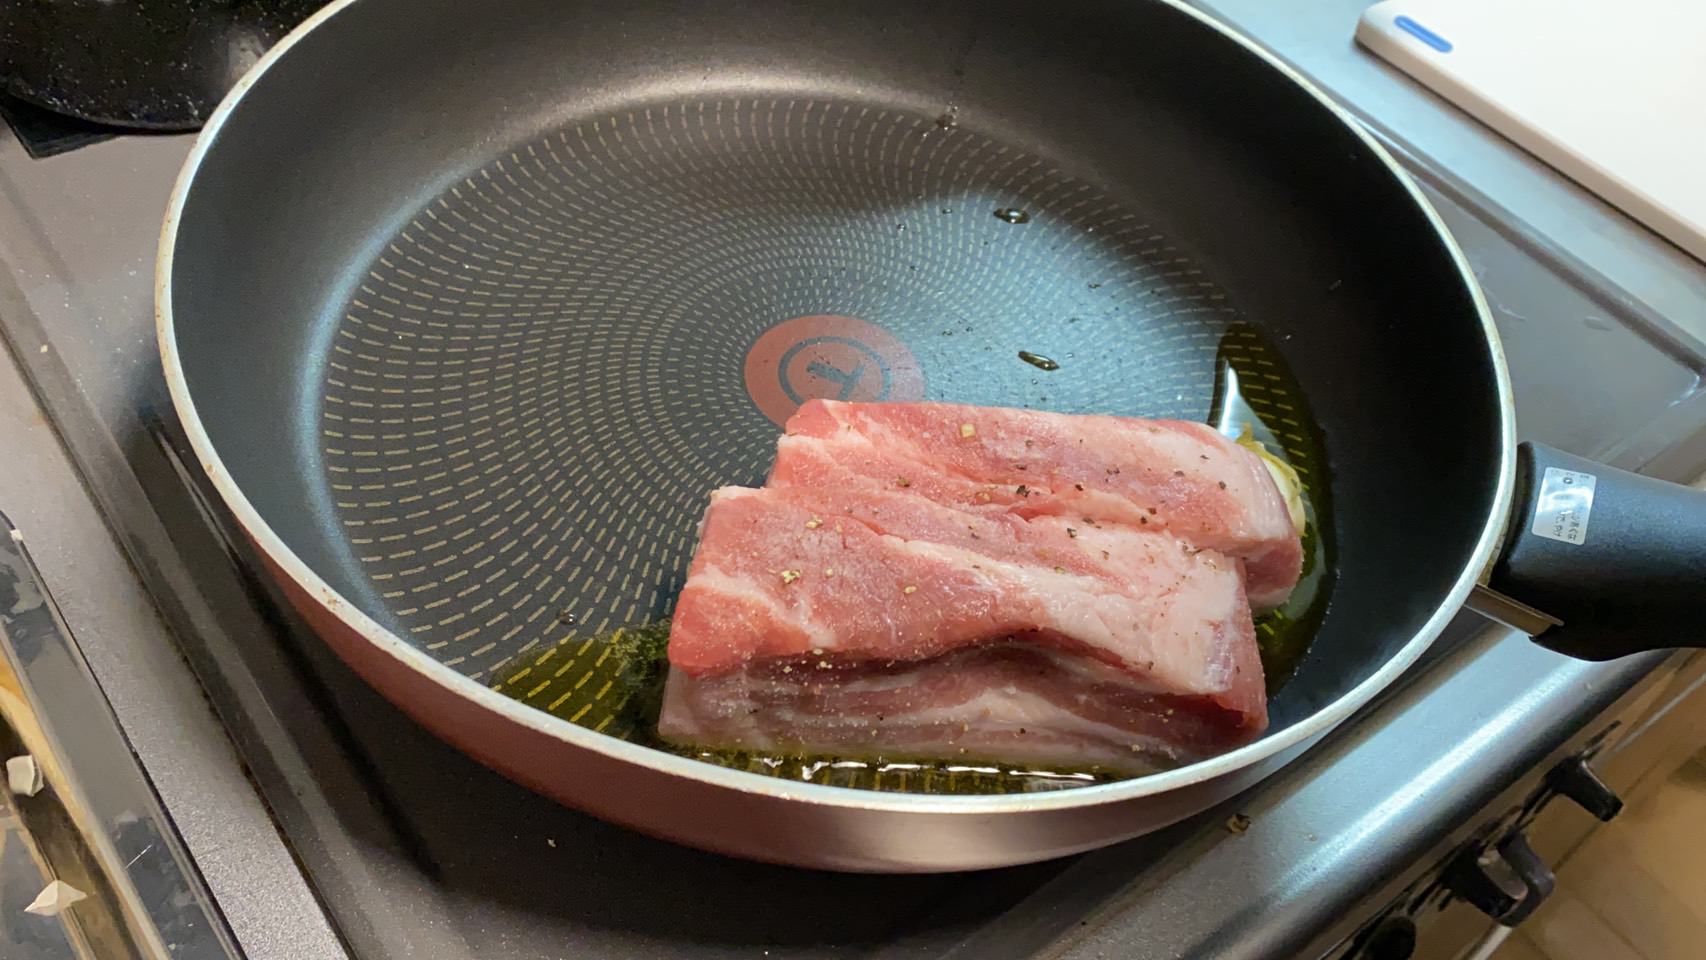 豚バラ肉を皮付きにんにくとオリーブオイルで脂身からフライパンで焼いている様子の画像です